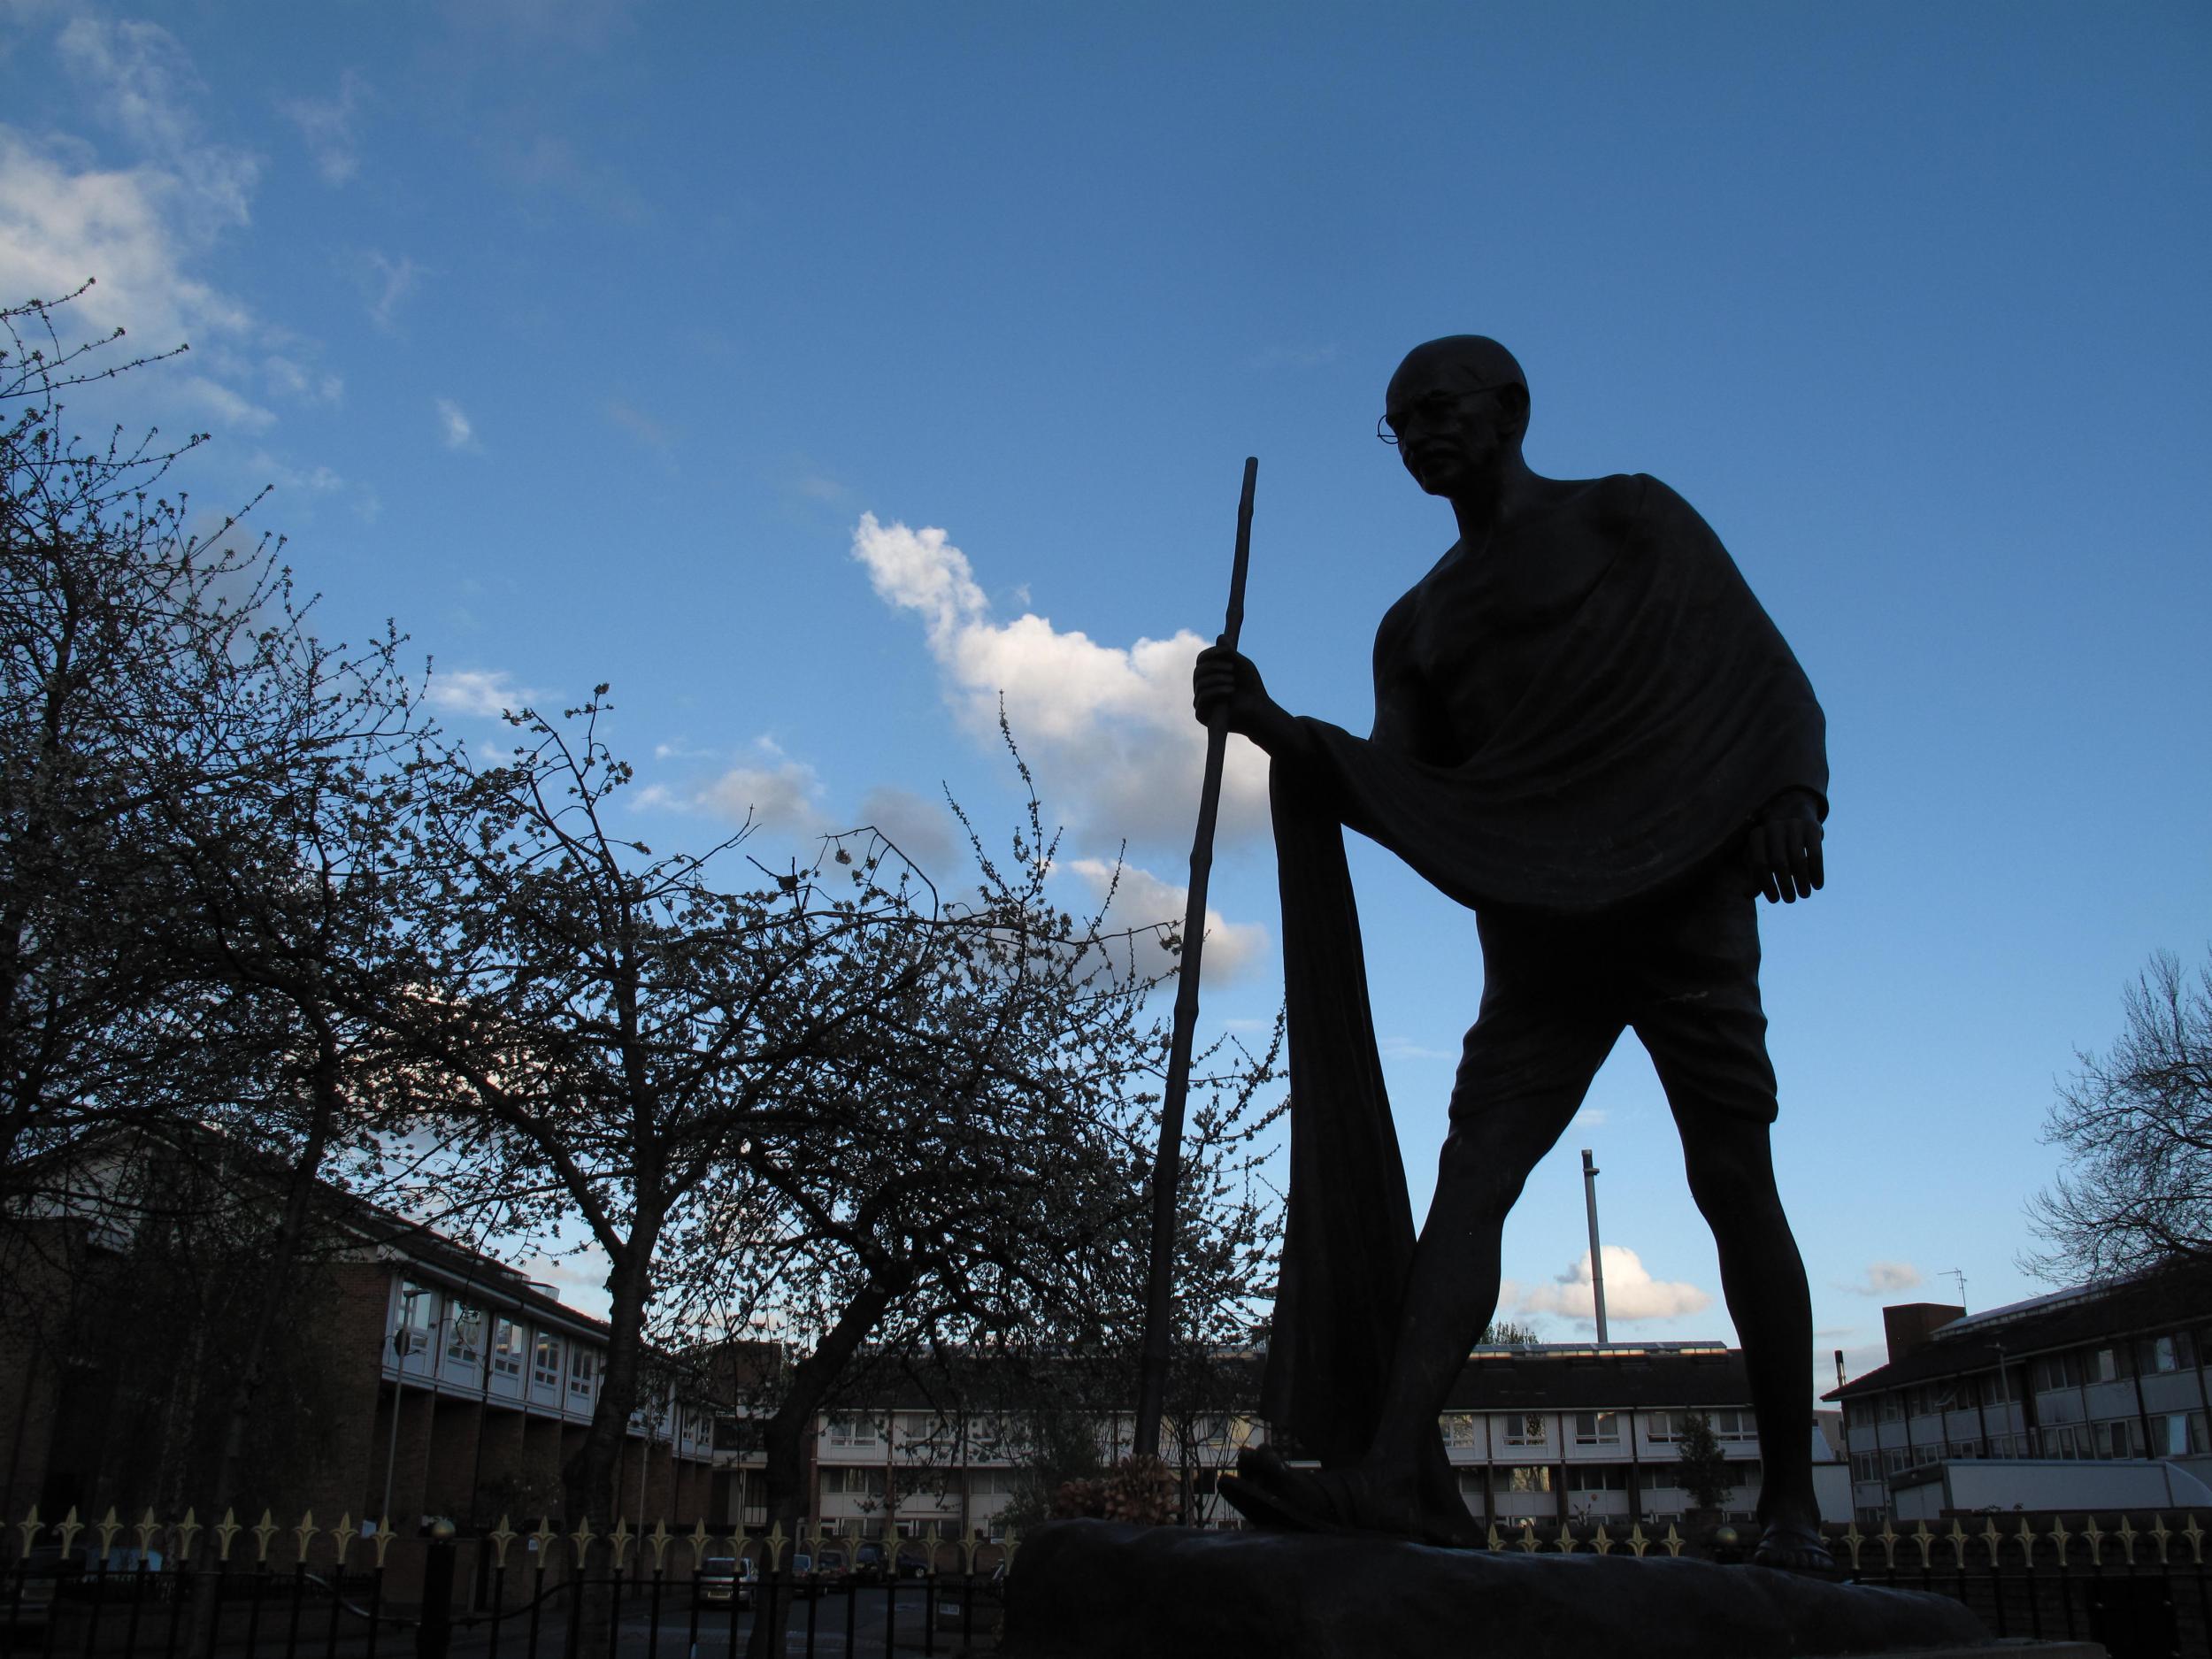 Statue of Mahatma Gandhi in Belgrave Road, Leicester